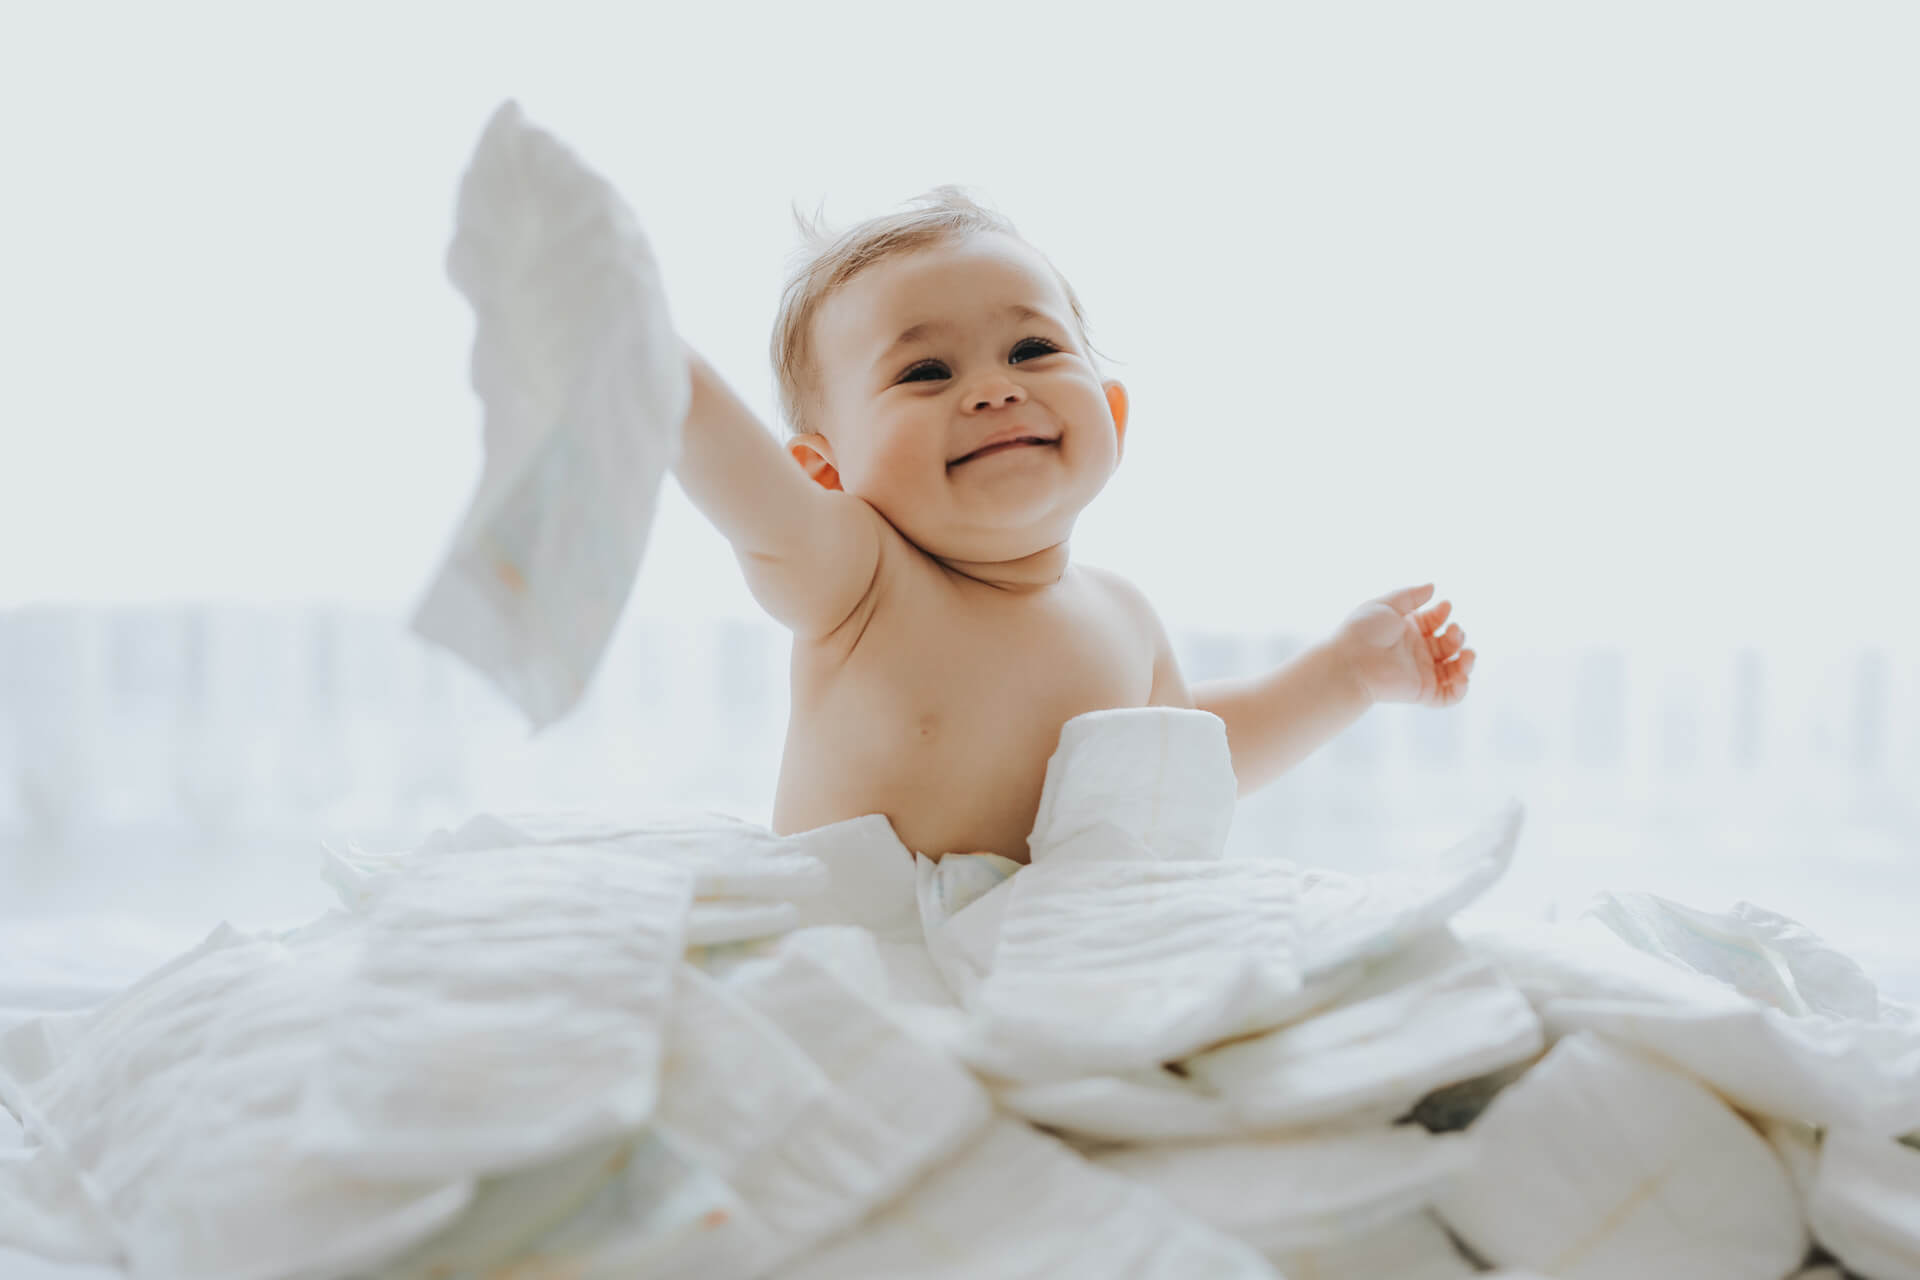 Existem muitas marcas de fraldas, e você deve escolher a melhor para a pele do seu bebê.